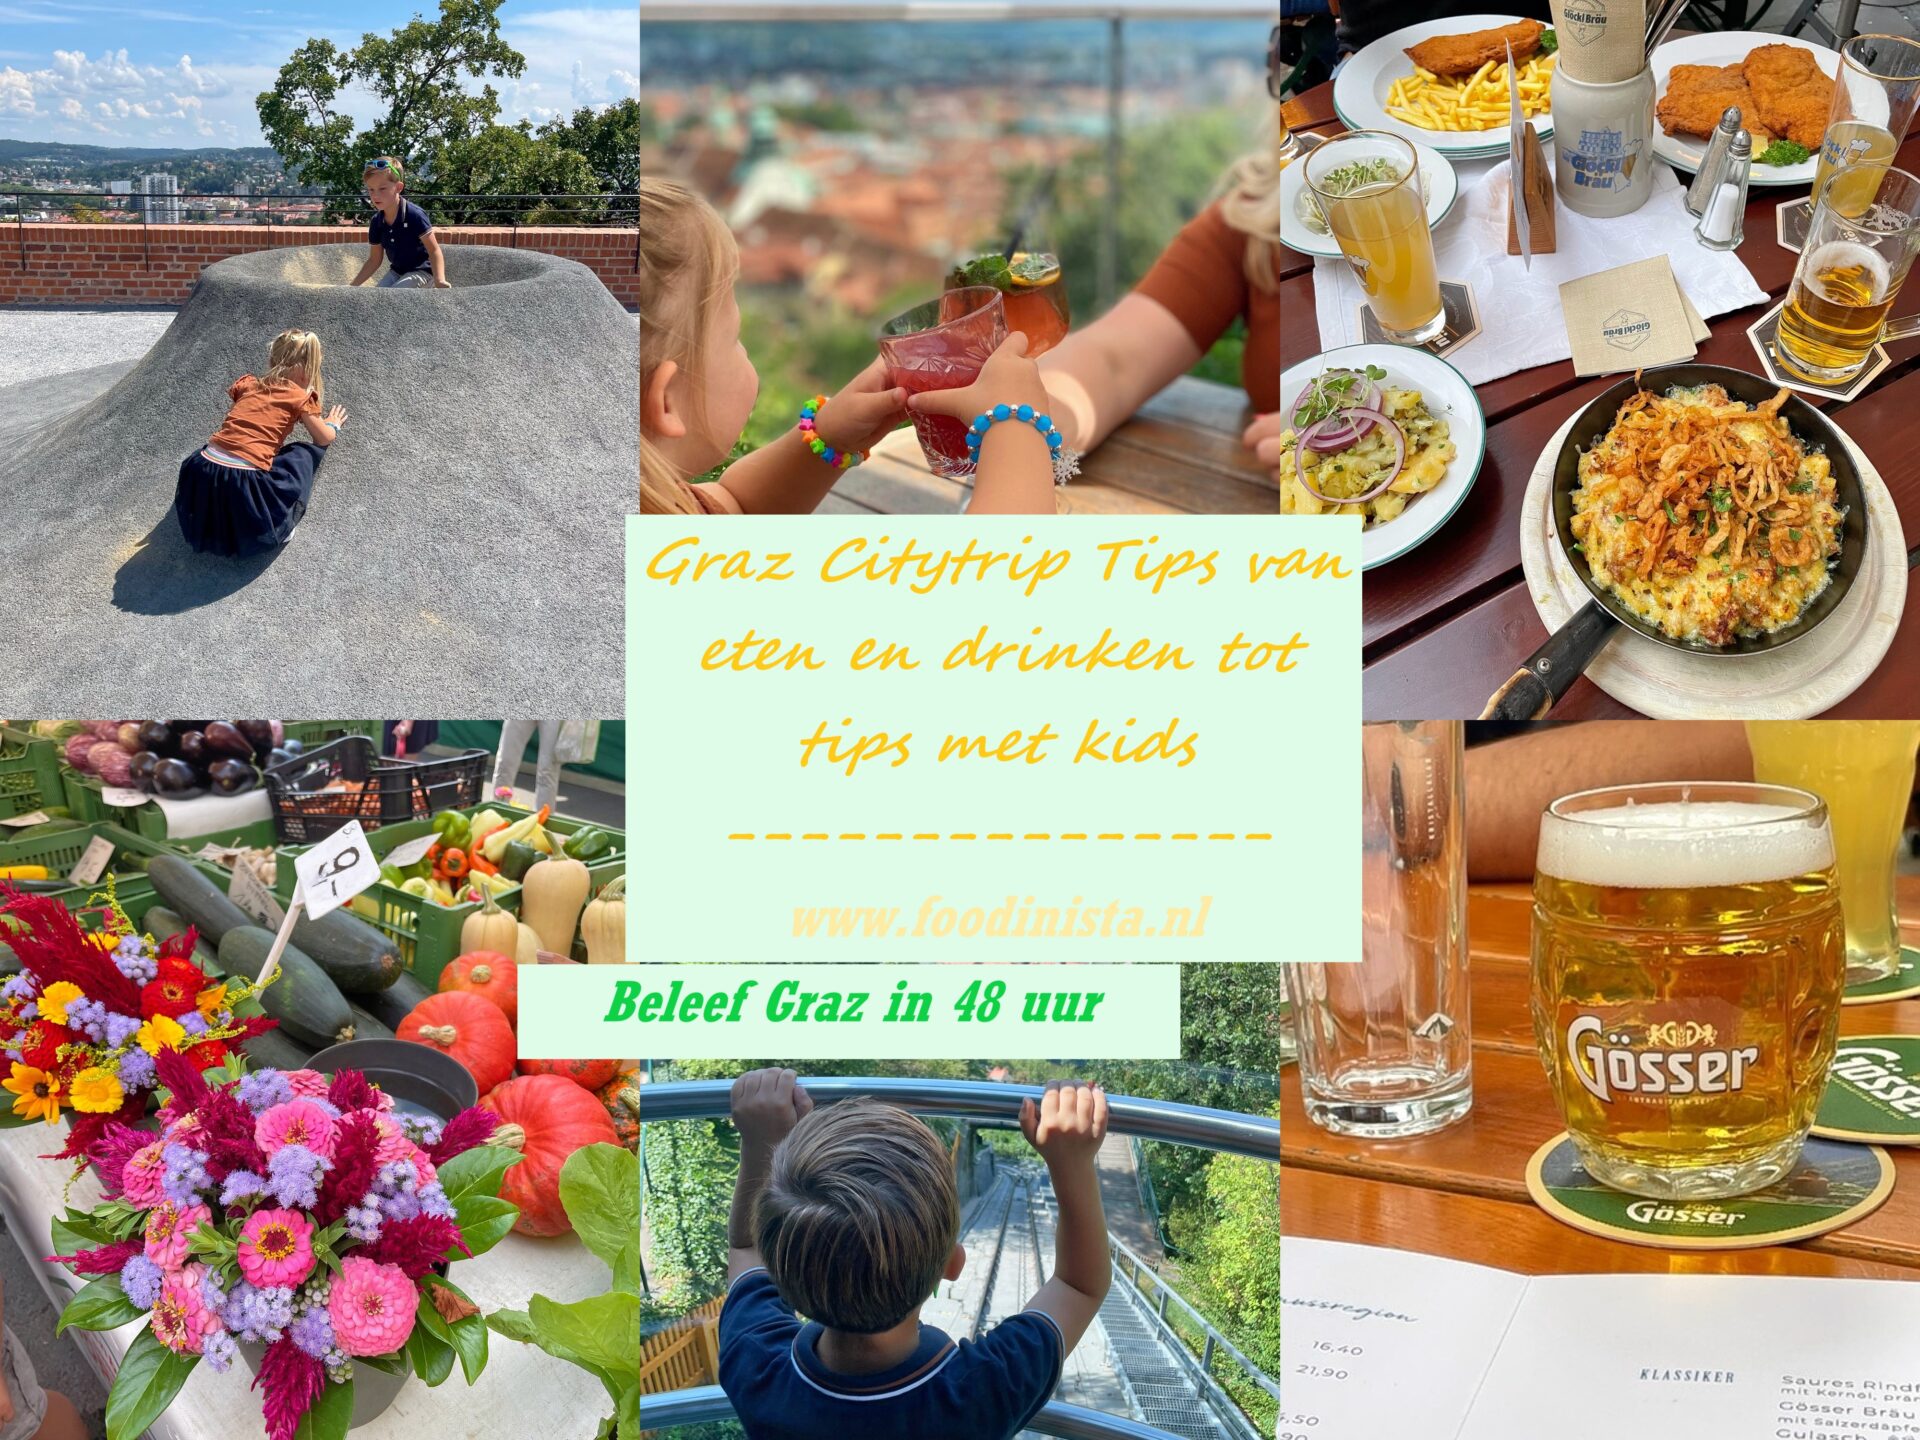 48 uur in Graz - Eten en drinken tot tips met kids - Foodblog Foodinista